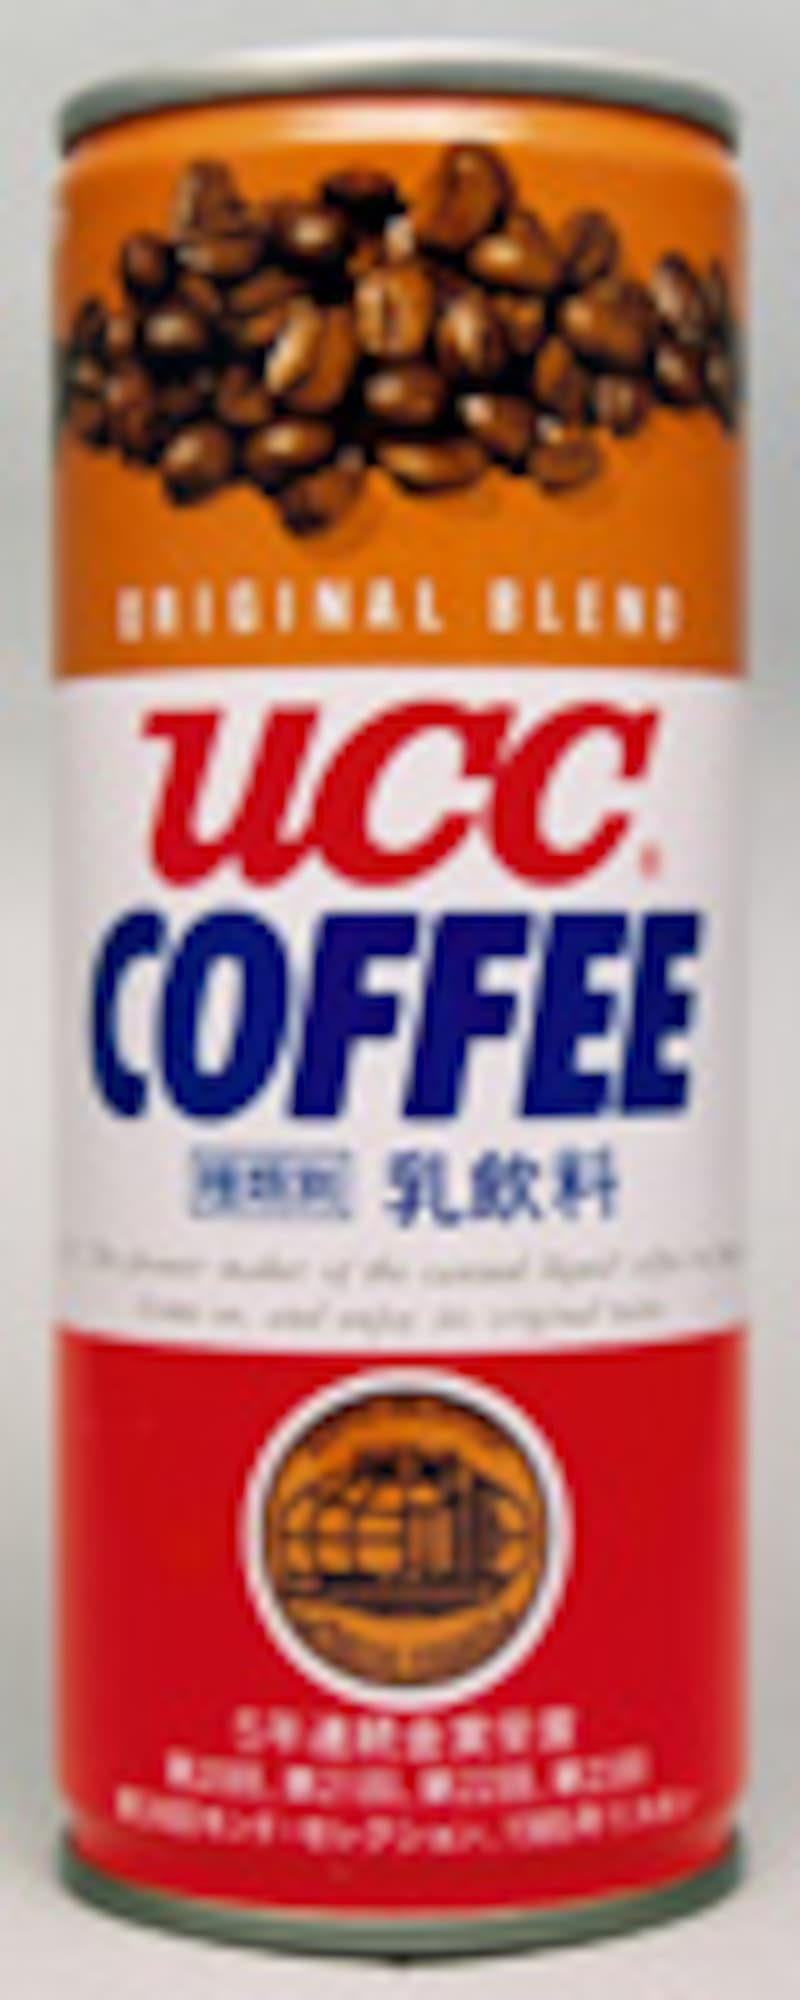 UCCコーヒーオリジナル